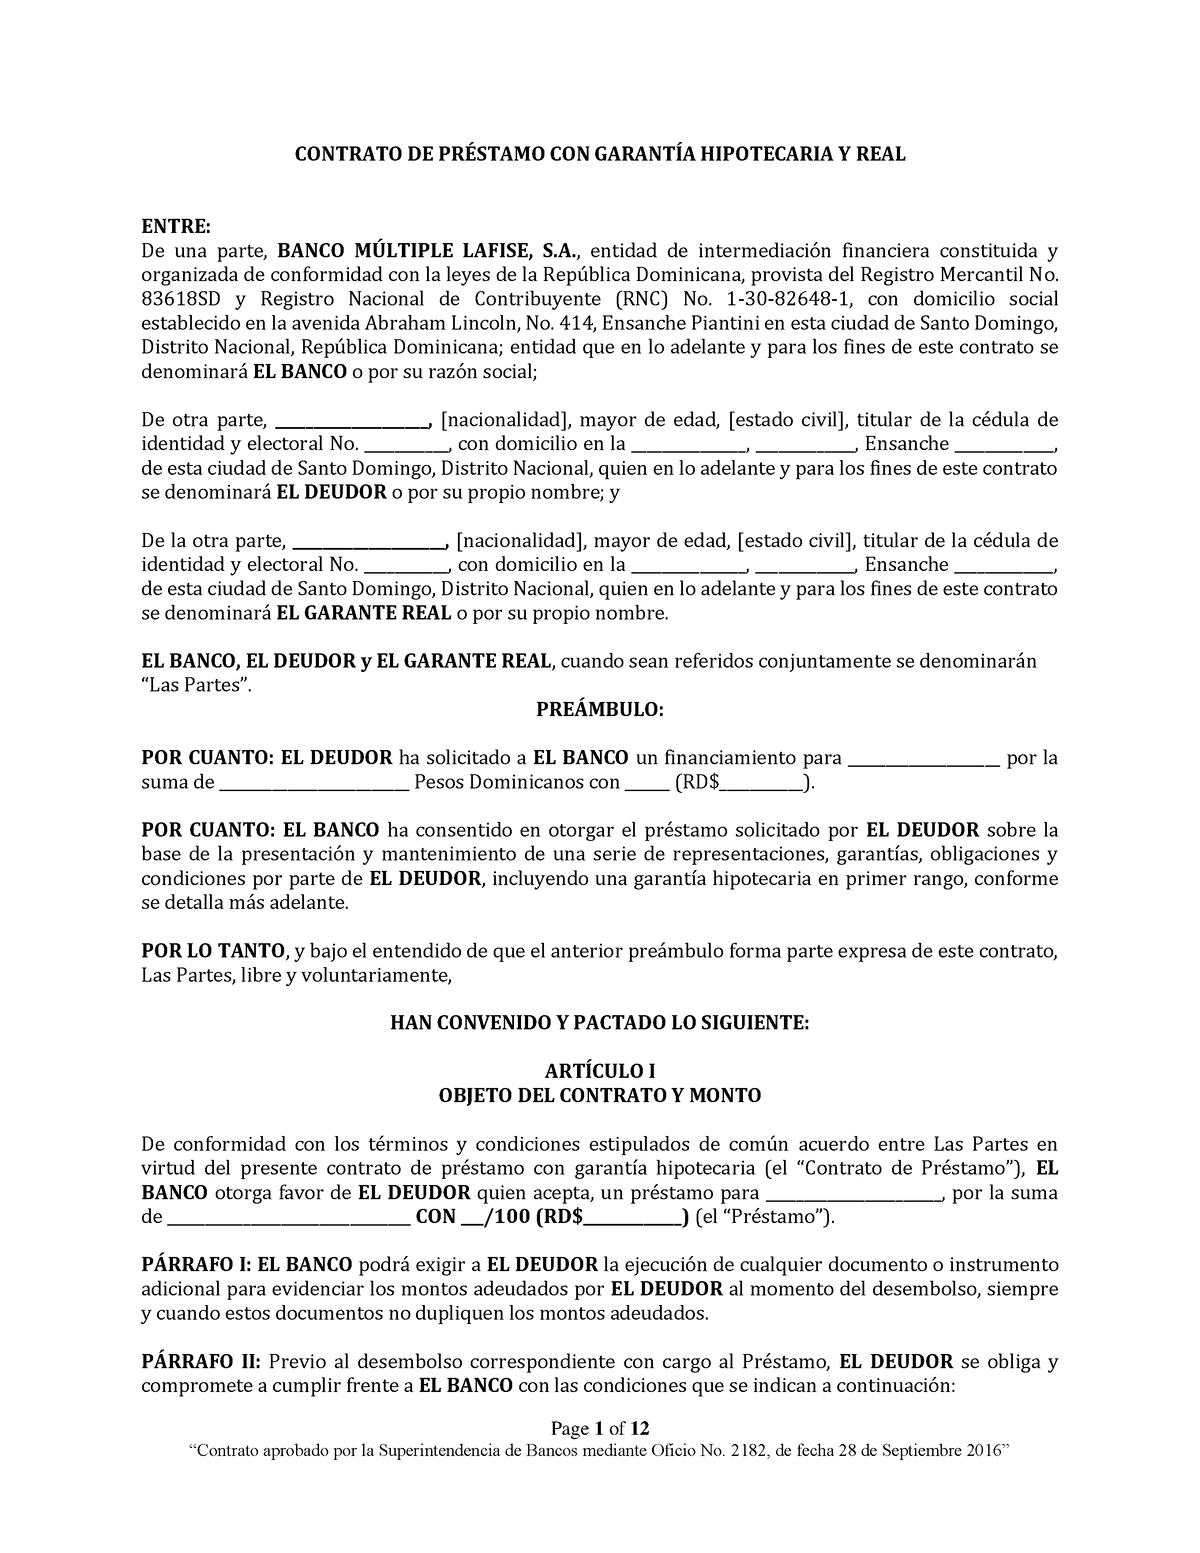 Contrato De Prestamo Con Garantia Hipotecaria Y Real Page 1 Of 12 Contrato De PrÉstamo Con 4801